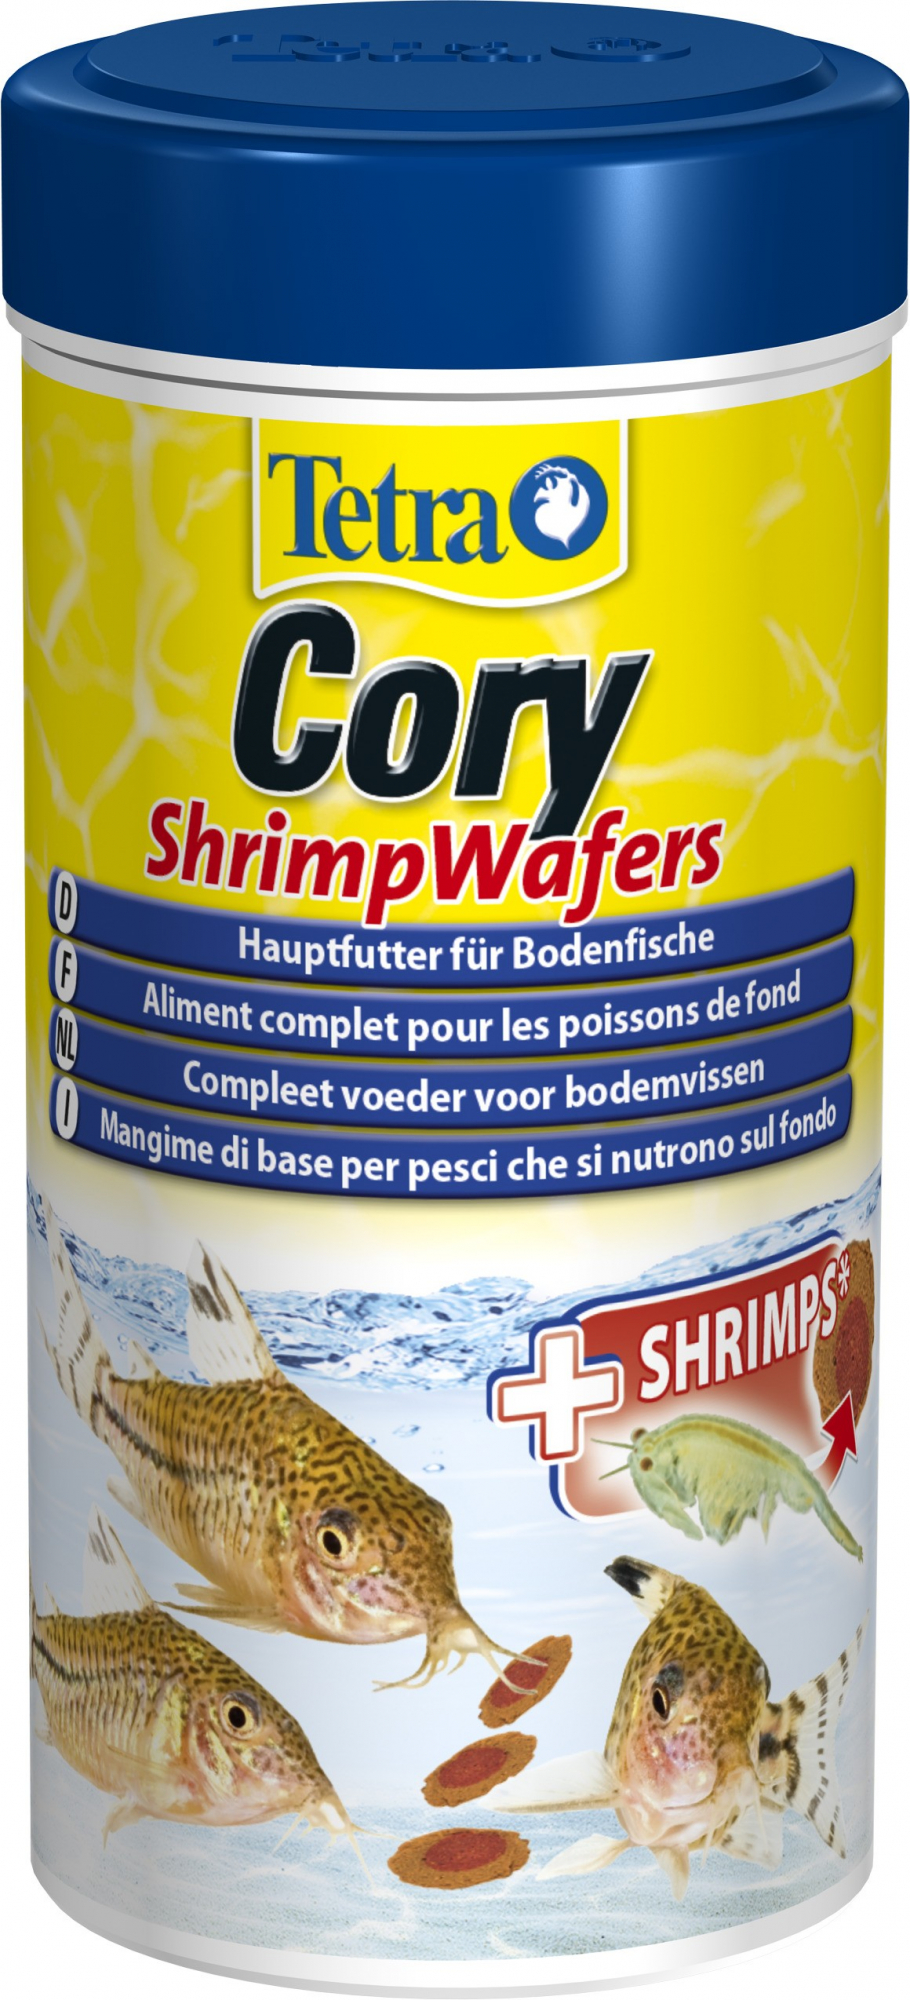 Tetra Cory Shrimp Wafers para corydoras